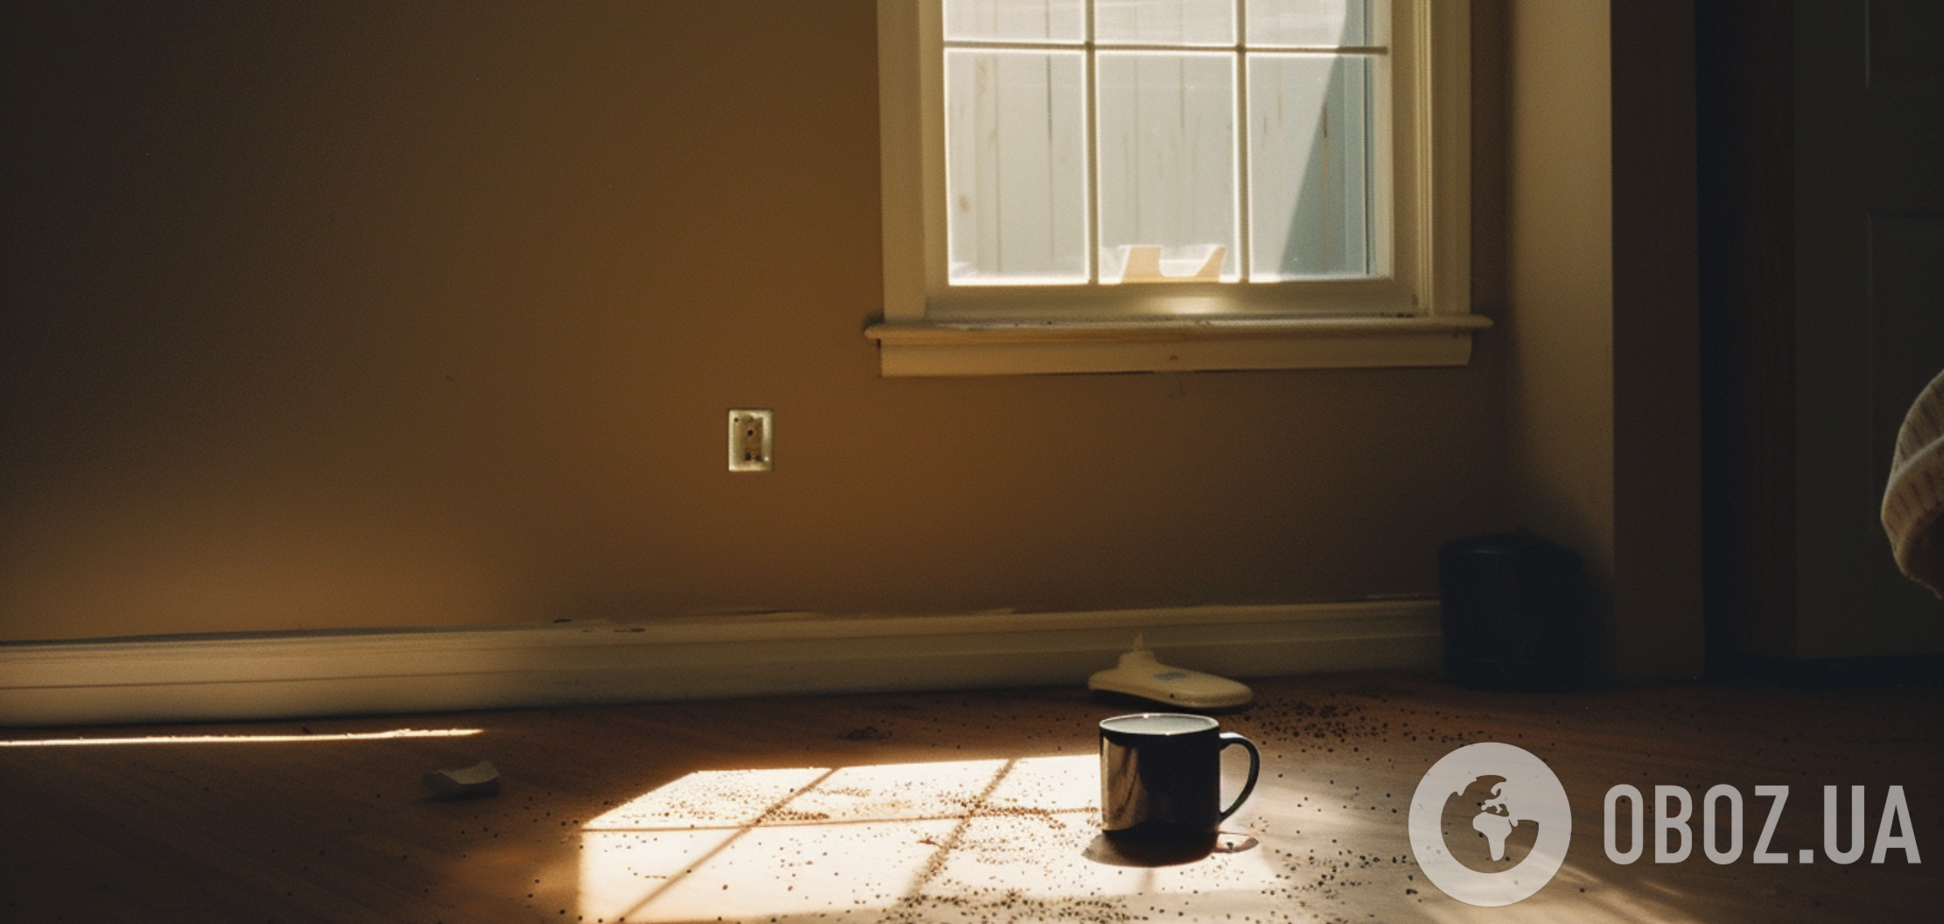 Навіщо у кімнаті після ремонту ставлять свіжозмелену каву: винахідлива хитрість